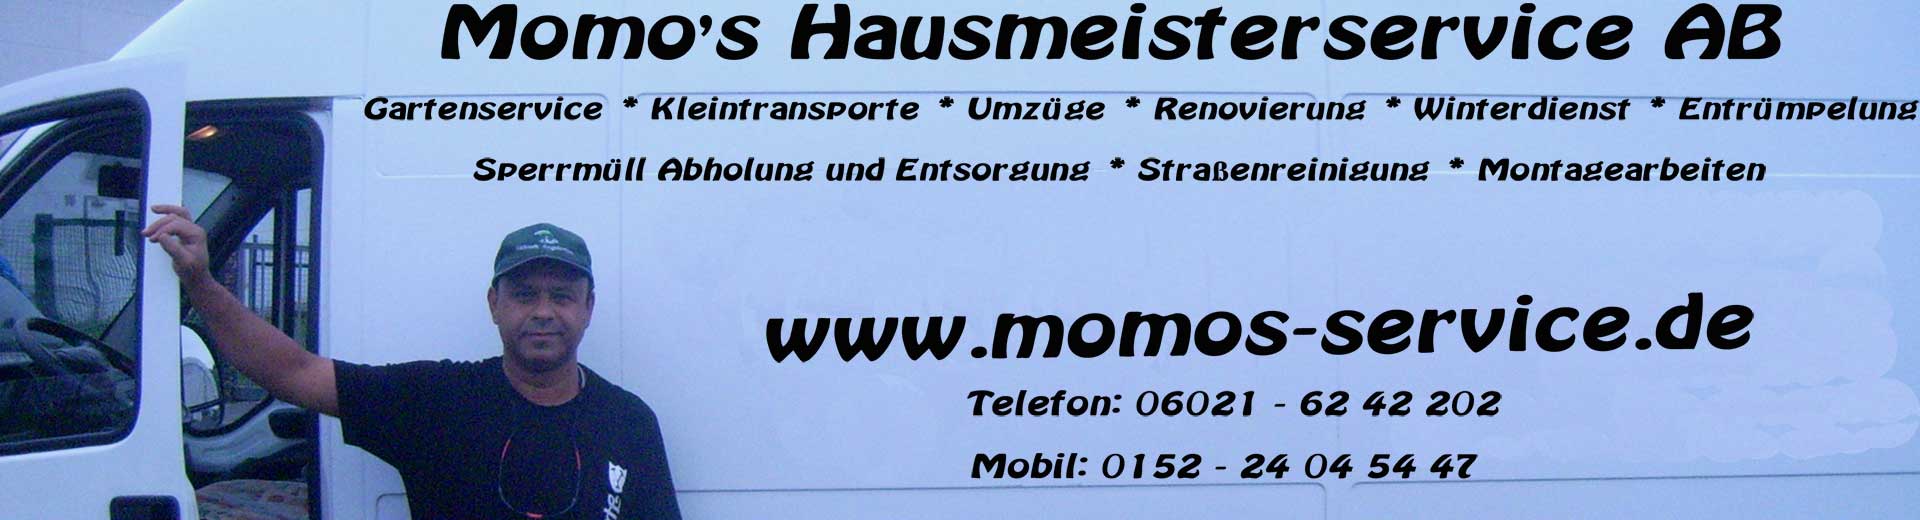 Hausmeisterservice in Aschaffenburg und Umgebung.